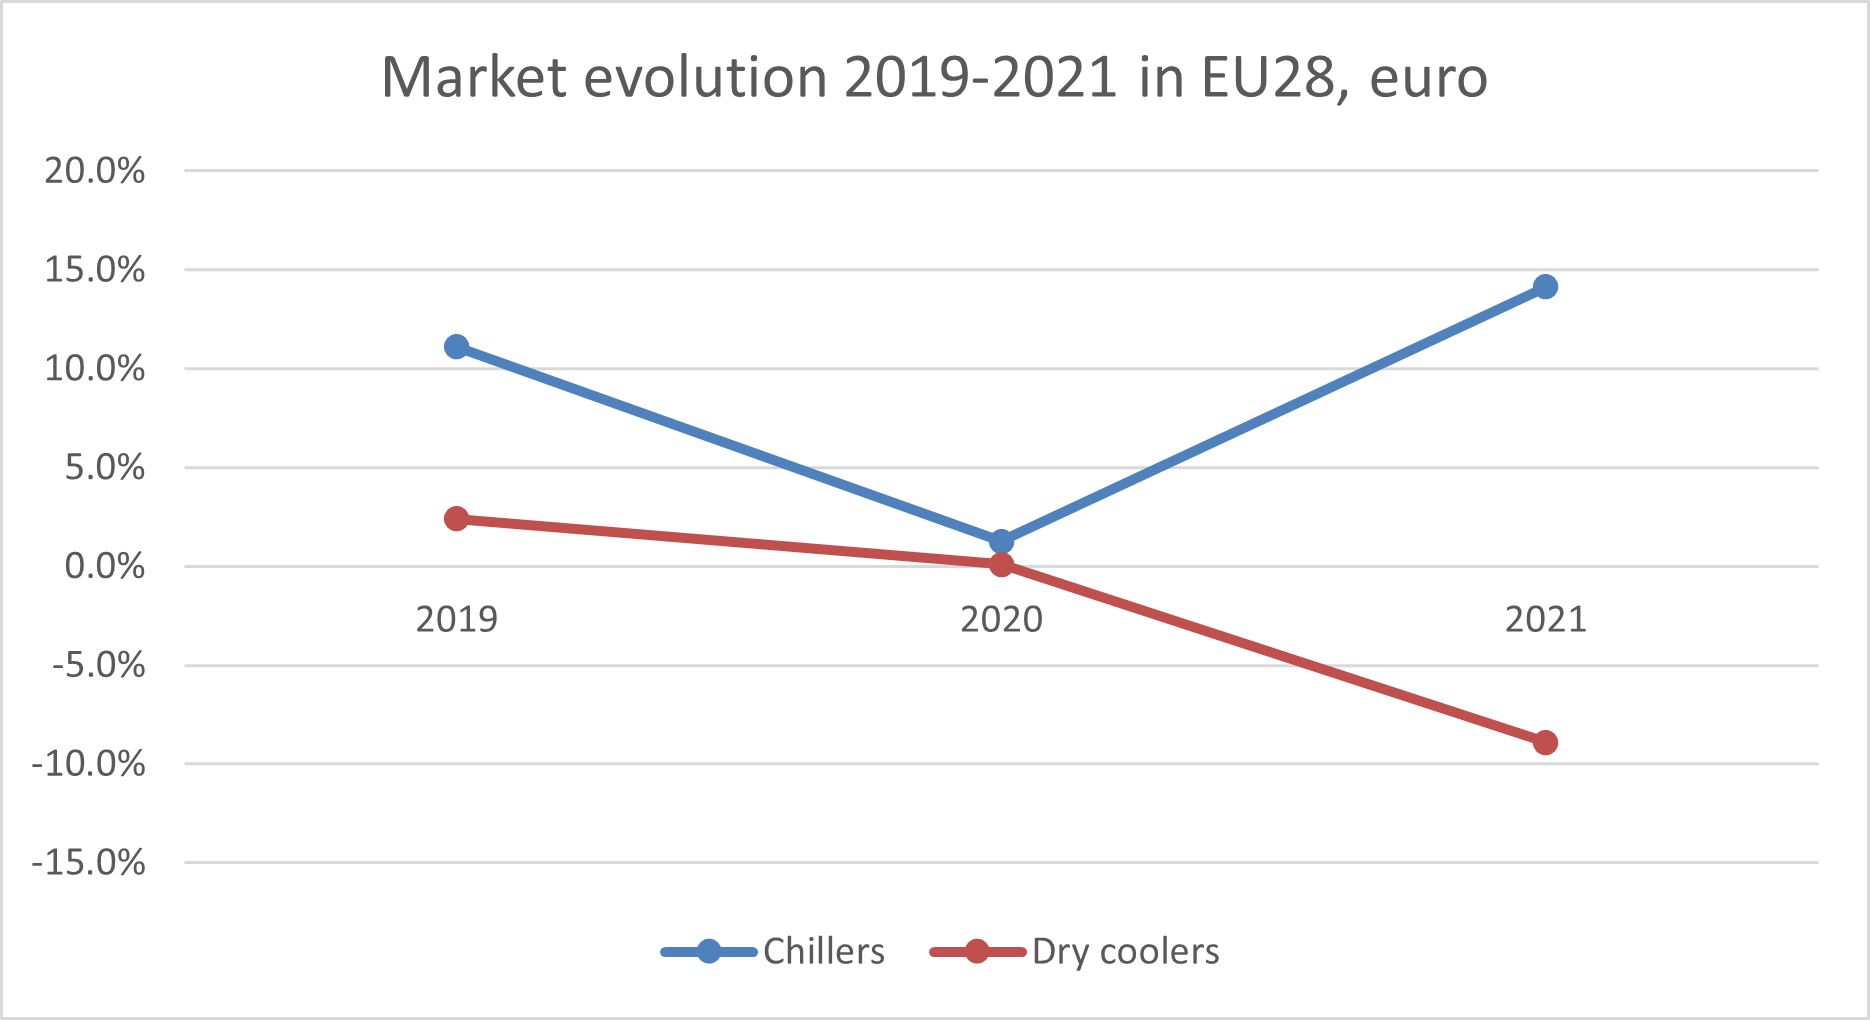 AB28'de chiller ve kuru soğutucu satışlarının gelişimi, 2019-2021, Eurovent Market Intelligence'dan alınmıştır